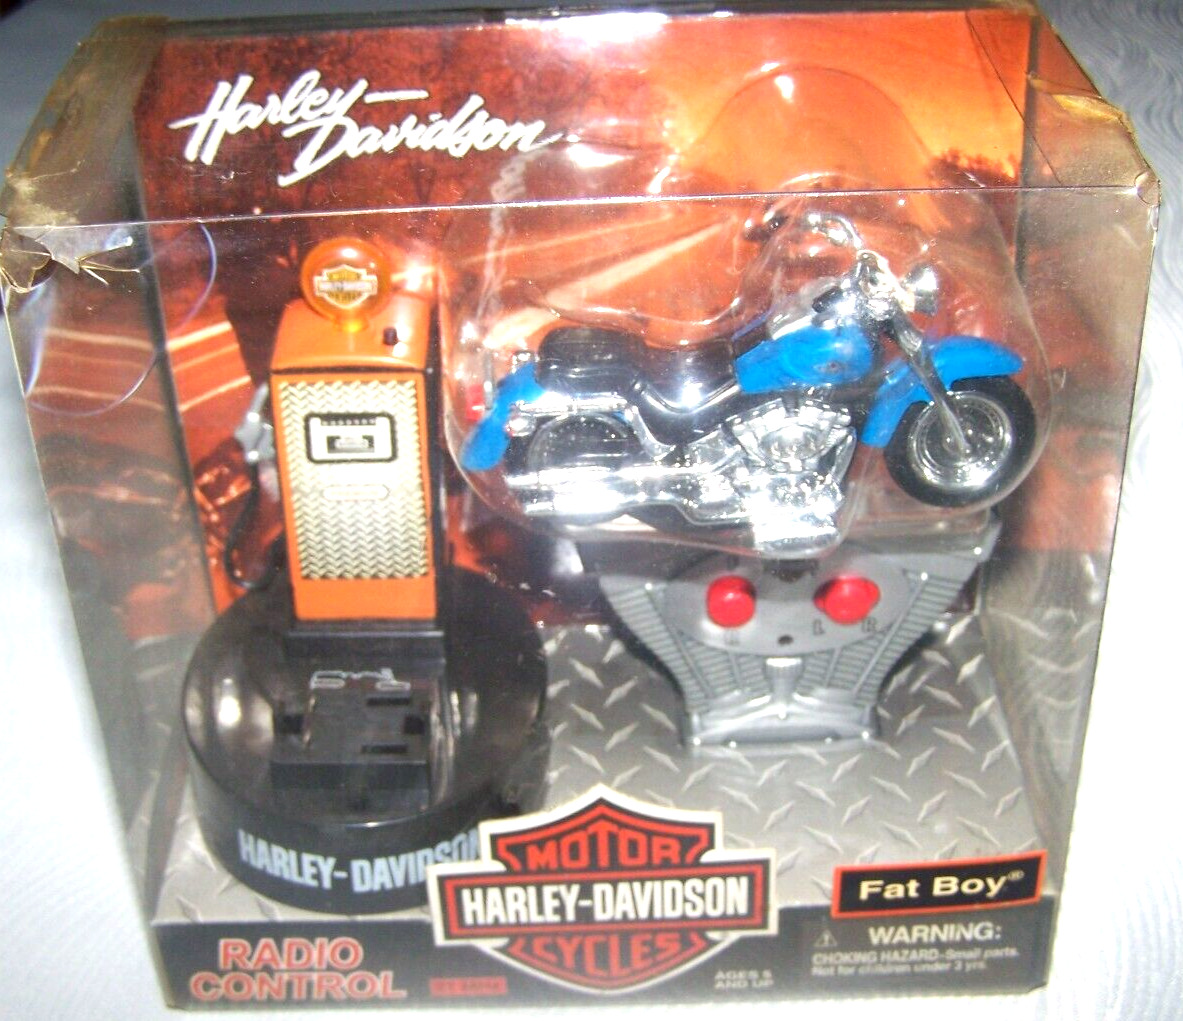 Harley Davidson R/C 2003 Fat Boy Blue Motorcycle Bike Radio Control Toy